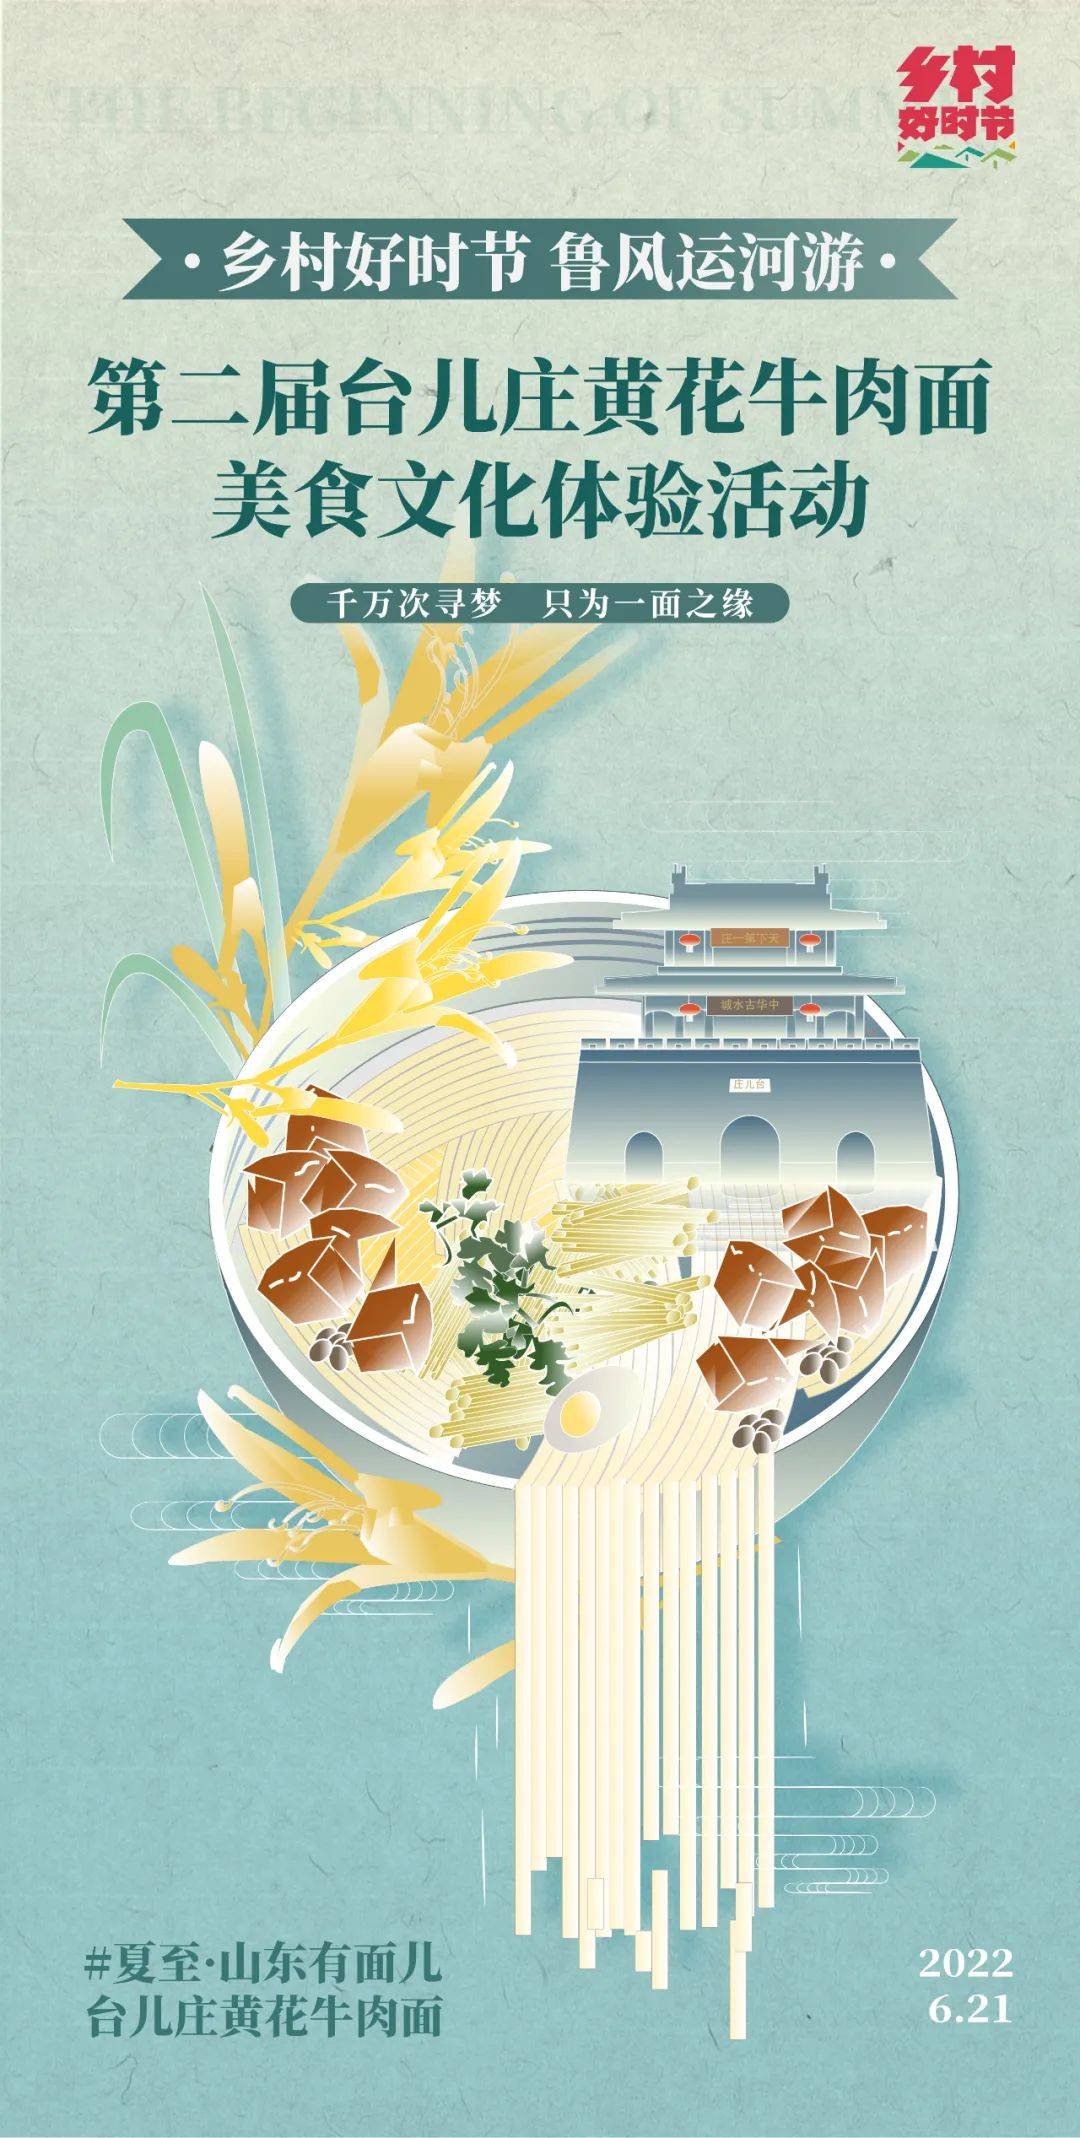 第二届台儿庄黄花牛肉面美食文化体验活动将于6月21日在台儿庄古城举行